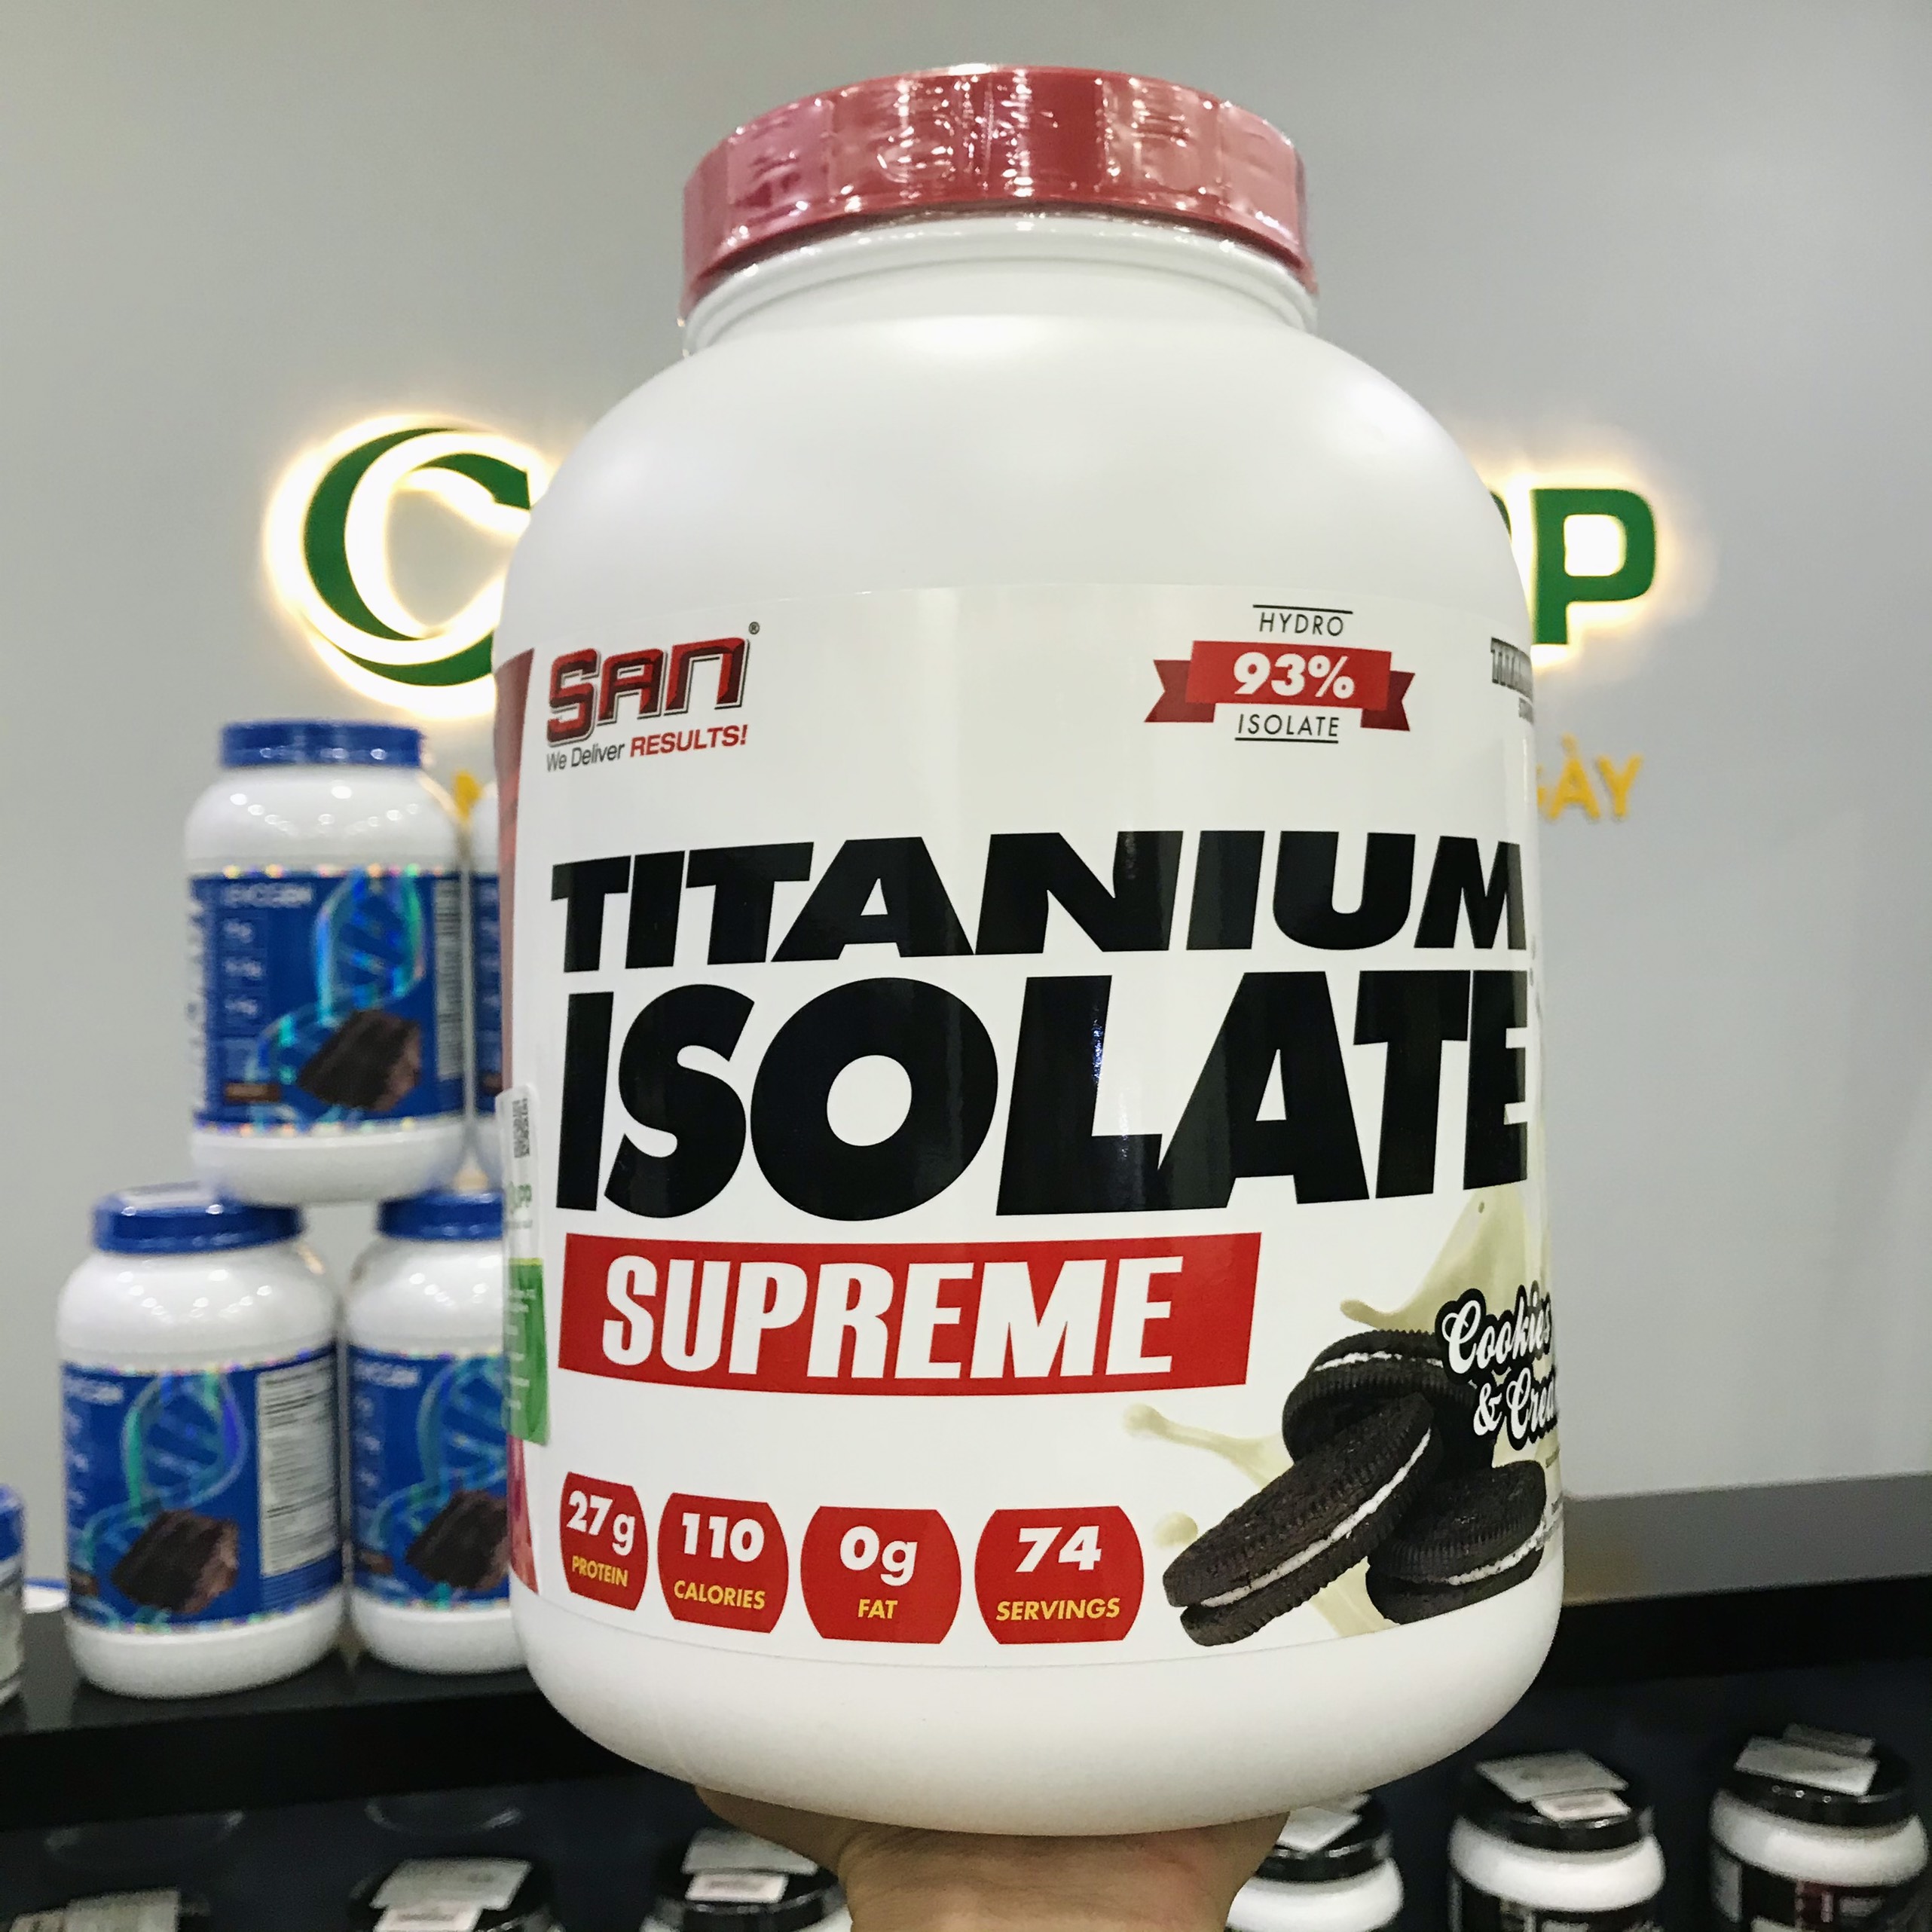 Combo Sữa Tăng Cơ SAN Titanium Isolate Supreme, Hỗ Trợ Xây Dựng Cơ Nạc Giảm Mỡ, 27g Protein Tinh Khiết, 7g BCAA, 0g Đường, 75 liều dùng - Kèm Bình Lắc (Màu Ngẫu Nhiên)